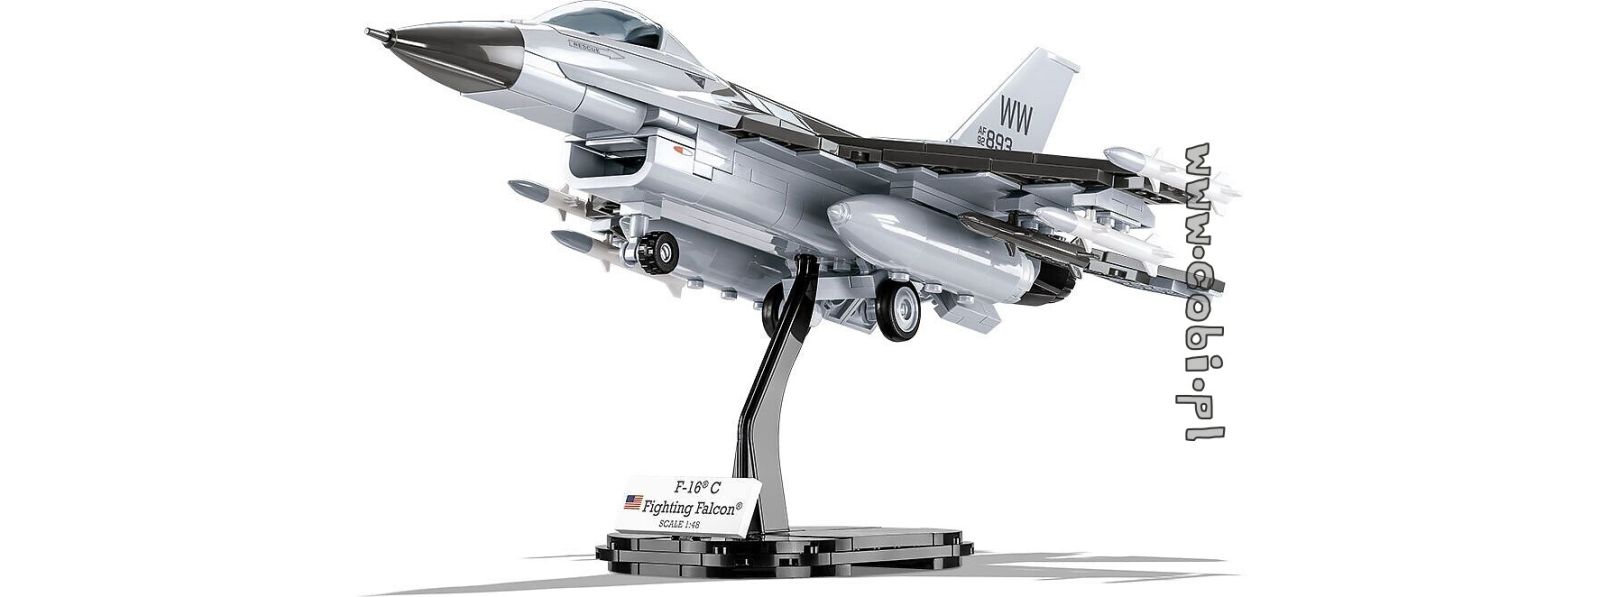 Historia z COBI. Samolot F-16, czyli multitasking w siłach powietrznych!